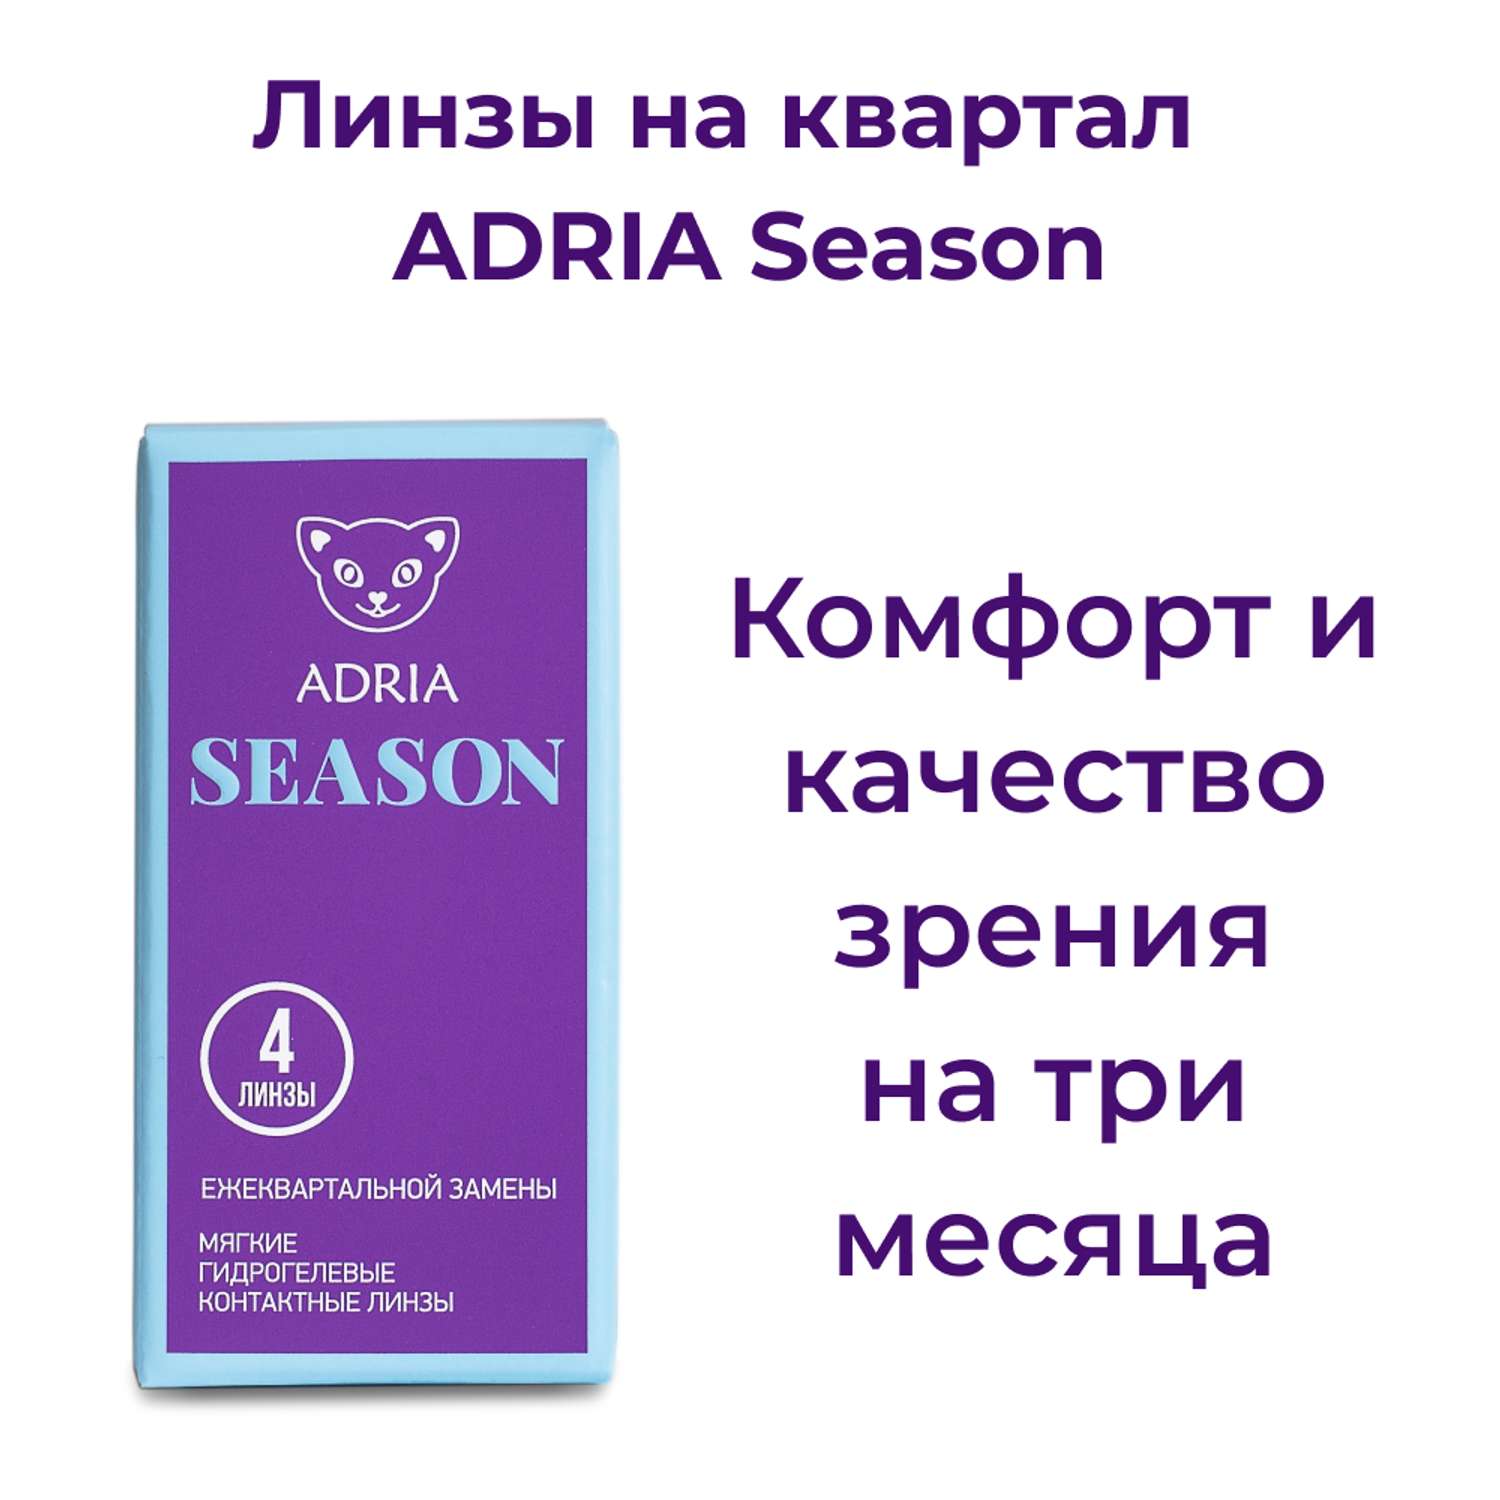 Контактные линзы ADRIA Season 4 линзы R 8.6 -1.50 - фото 2